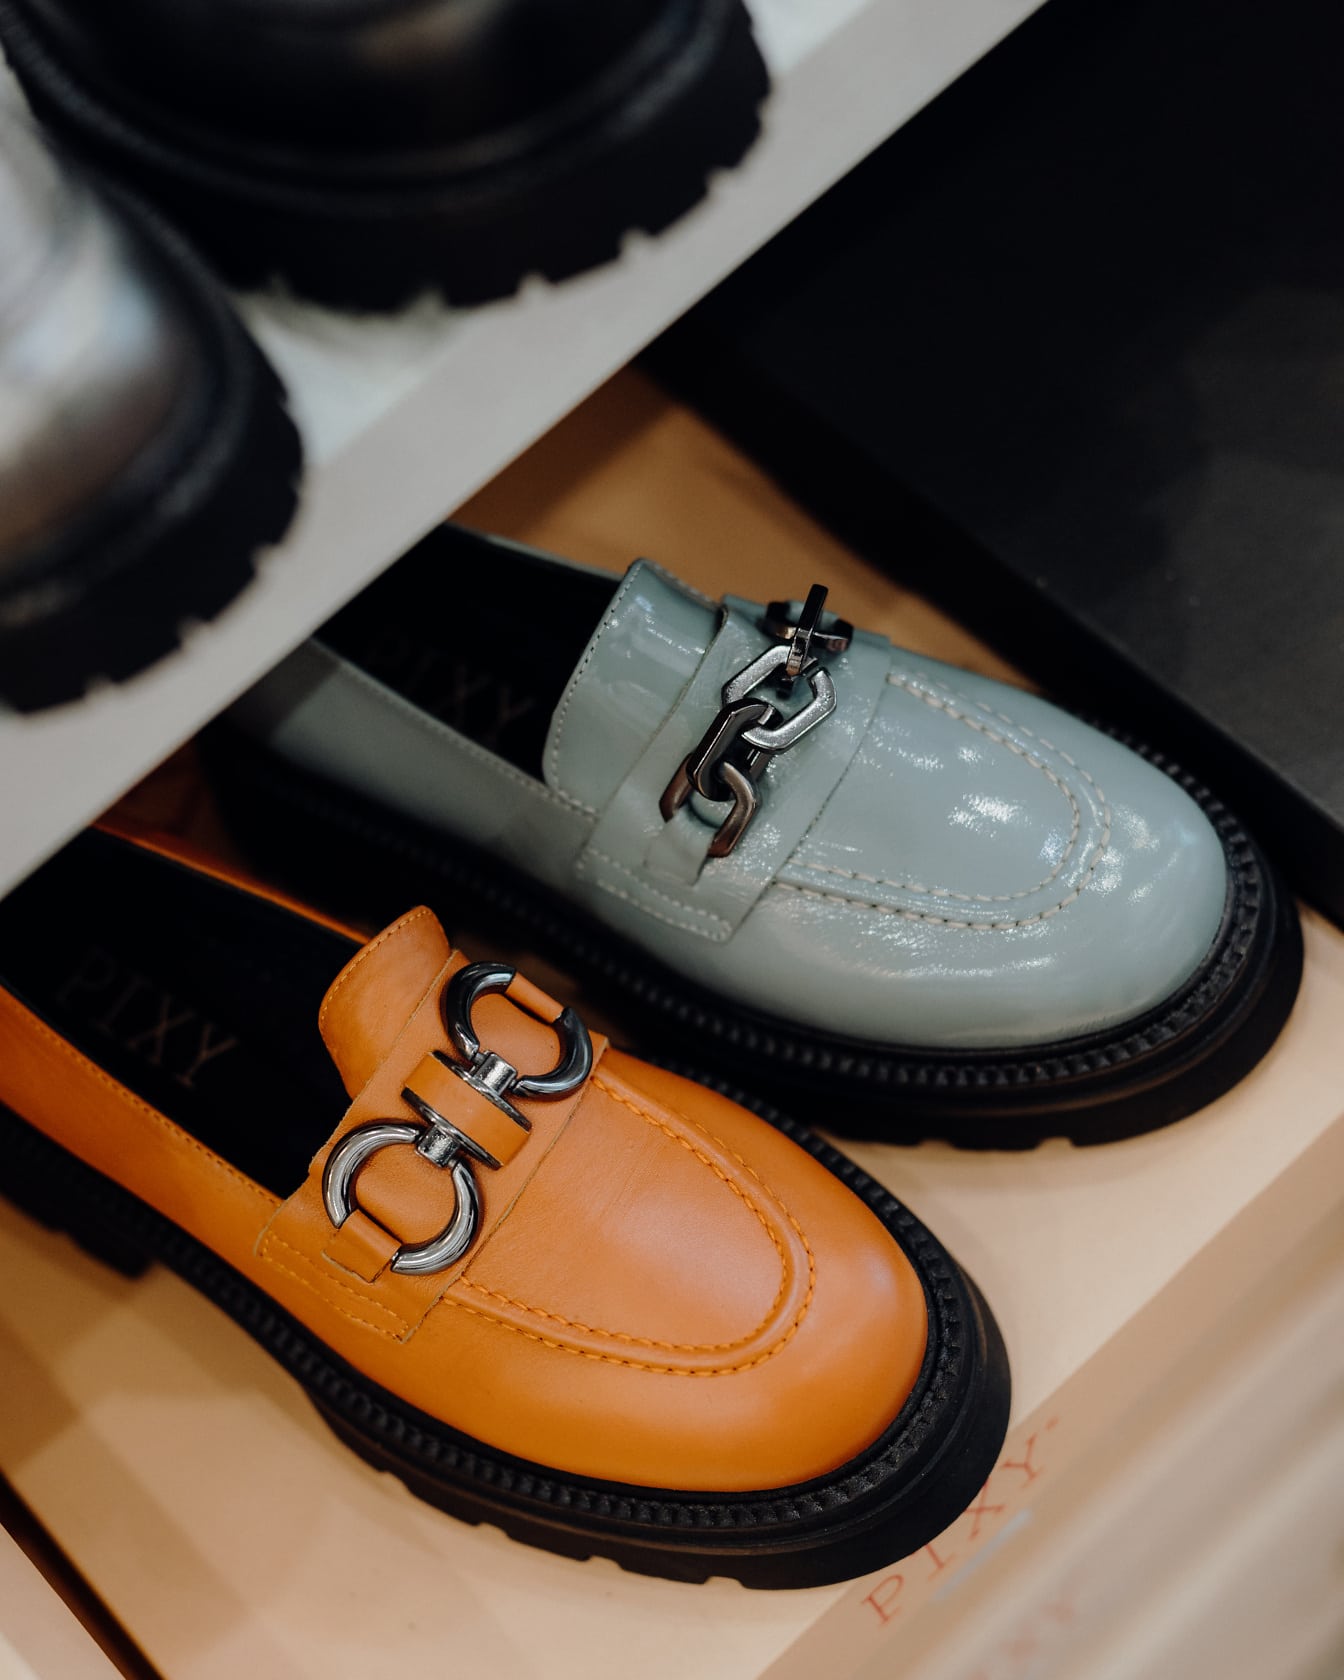 Par de zapatos modernos en un estante en una zapatería